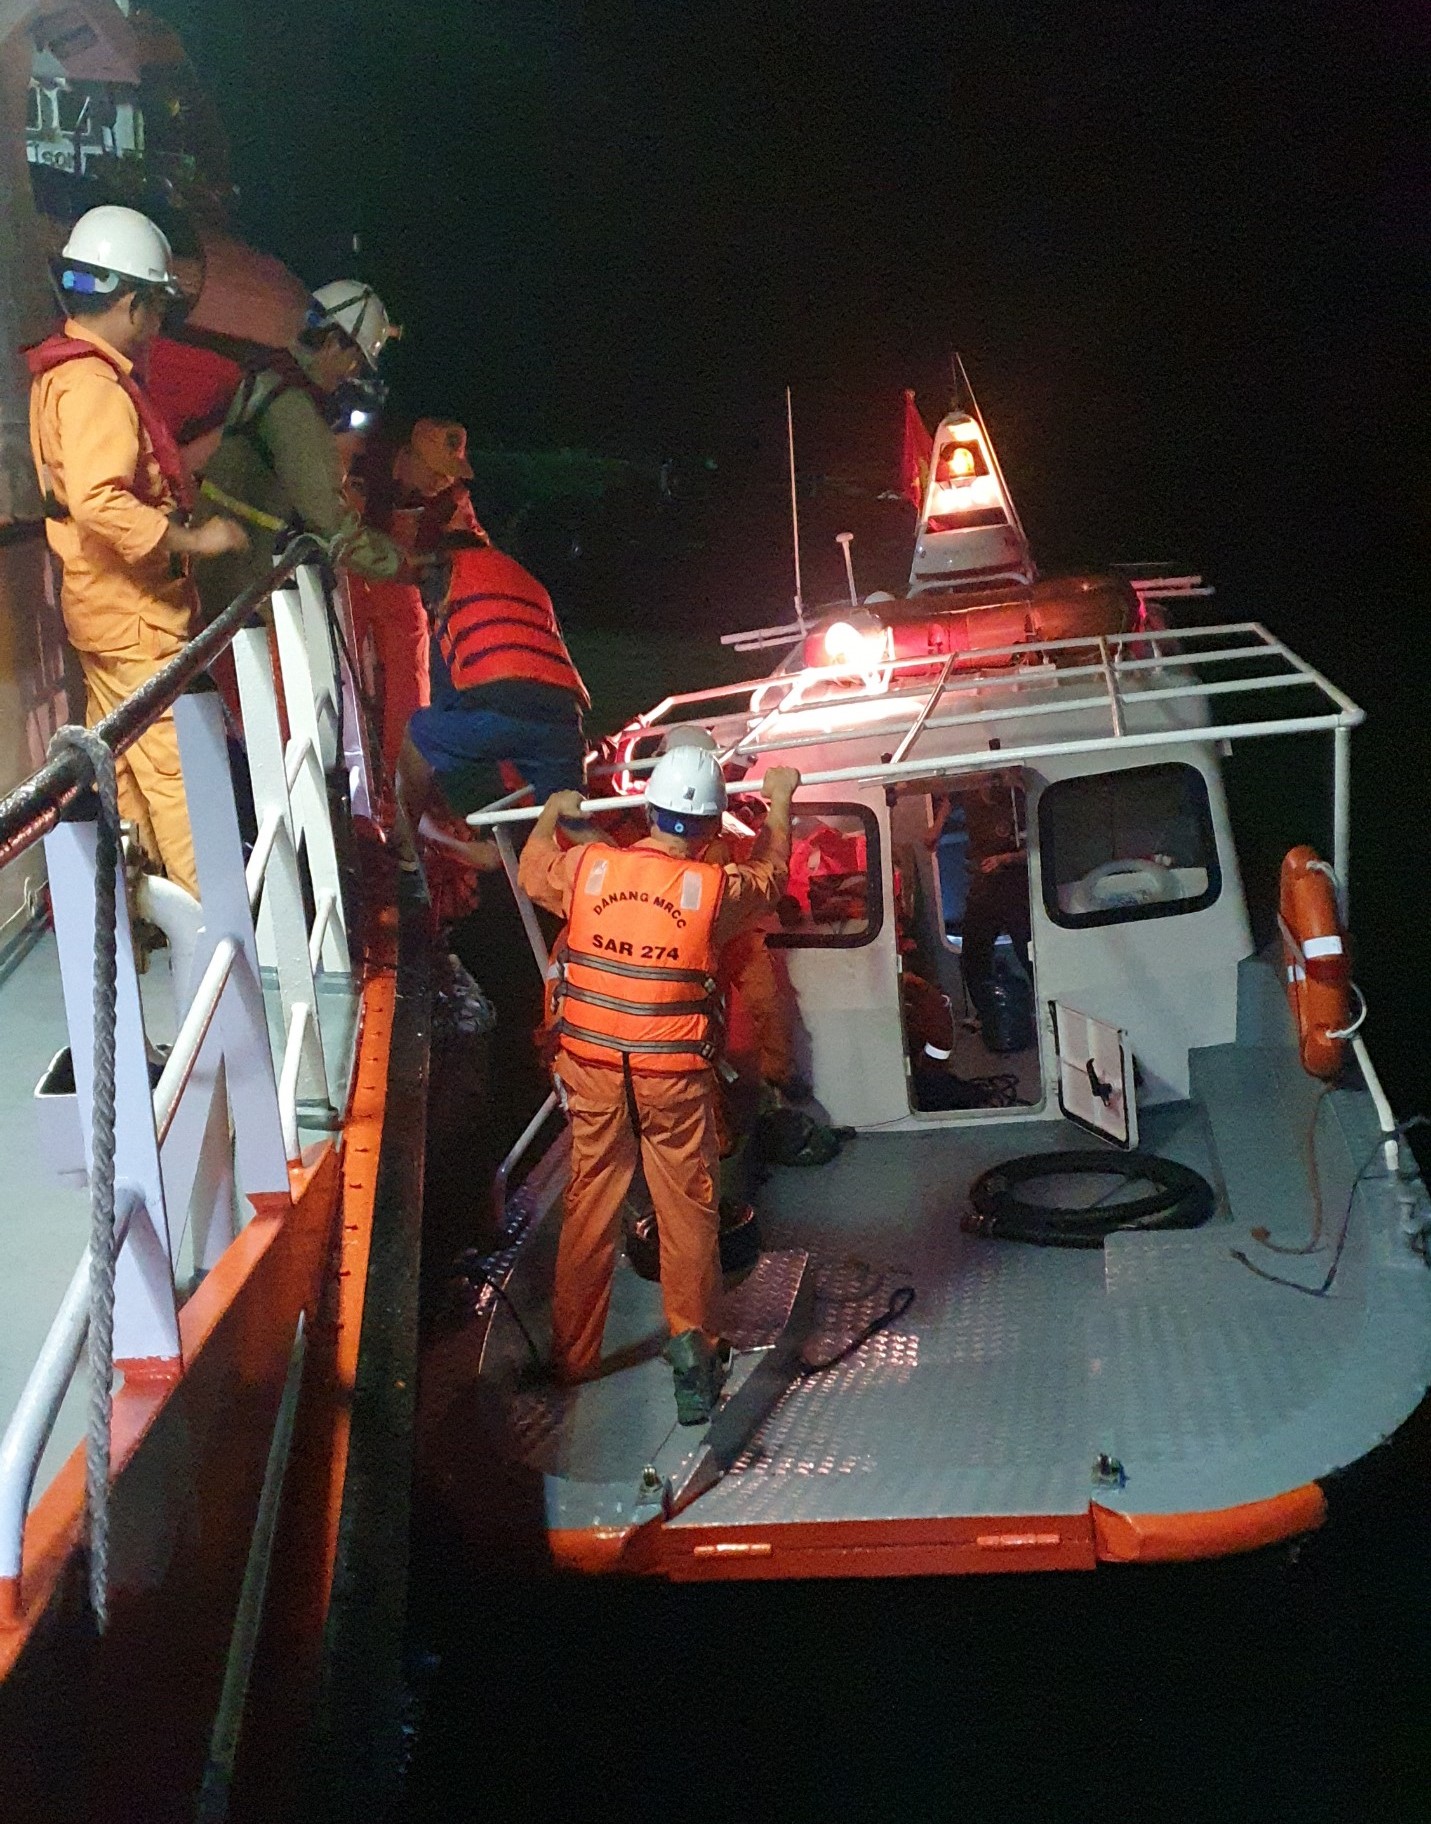 Tàu hàng bị nạn trong đêm, 9 thuyền viên kêu cứu - Ảnh 2.